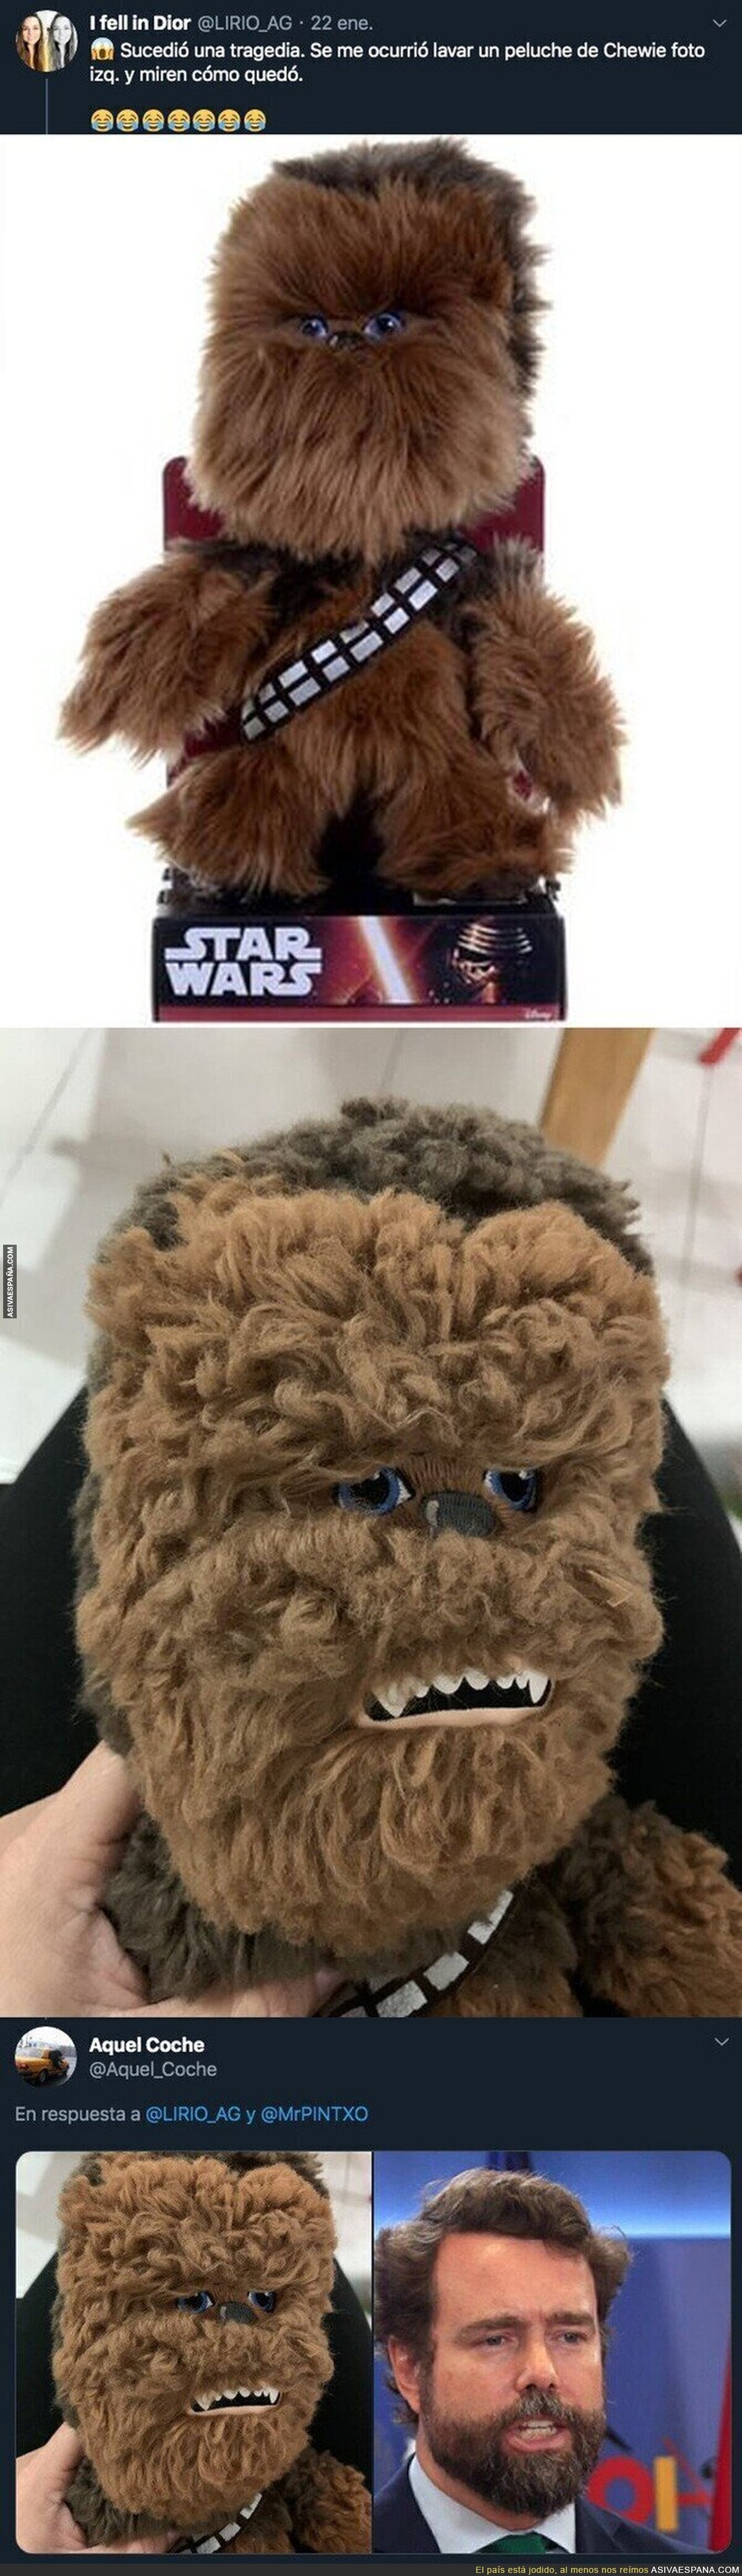 Ese Chewie mutó